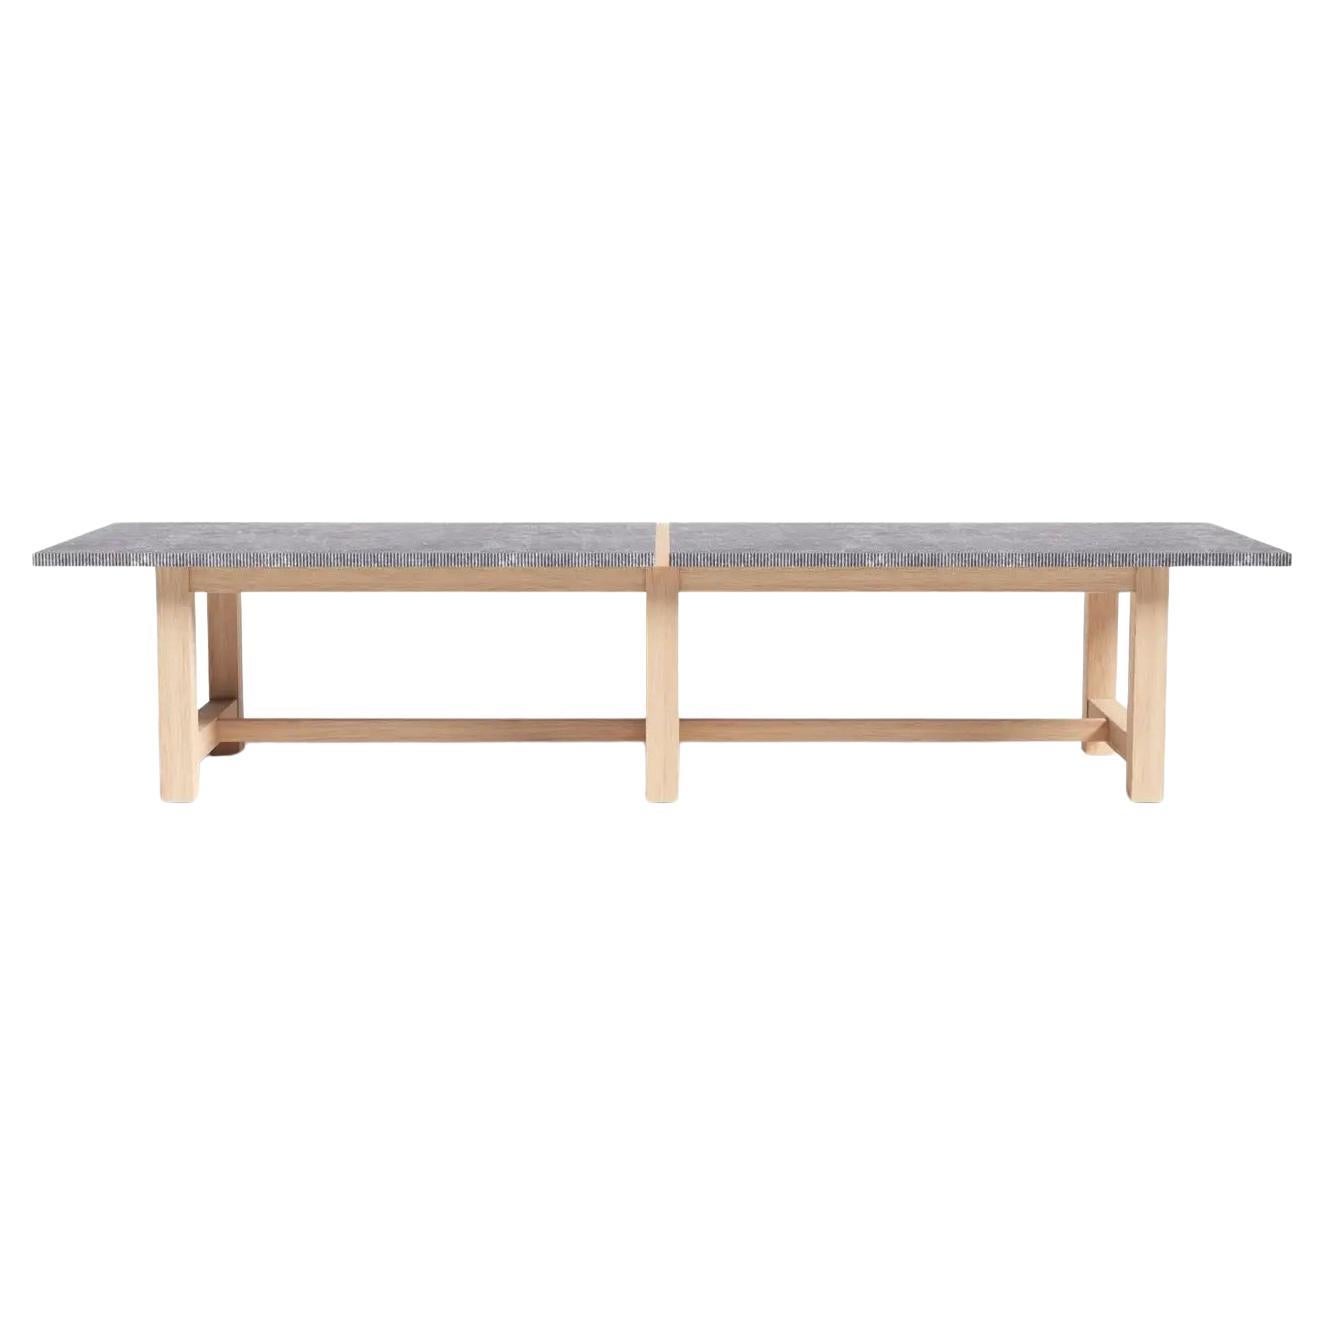 EN STOCK, PRÊT À ÊTRE EXPÉDIÉ.
Cette superbe table d'extérieur/indoor est composée d'un plateau en pierre bleue belge fixé sur un cadre en chêne français massif. Cette table robuste est fabriquée à la main en chêne durable. Une table avec laquelle